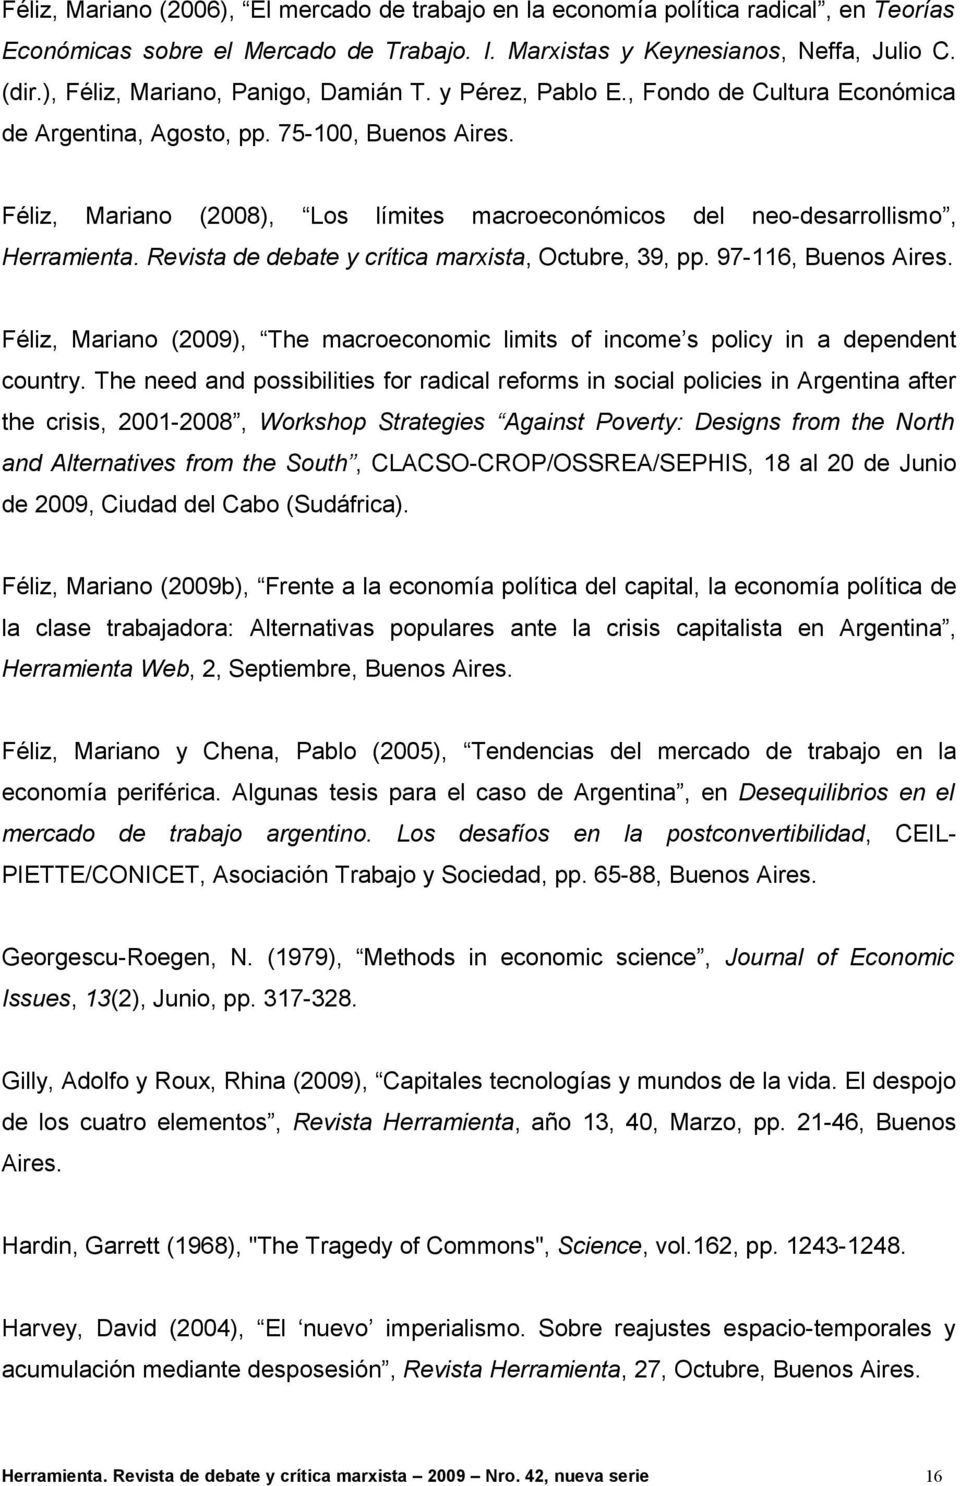 Féliz, Mariano (2008), Los límites macroeconómicos del neo-desarrollismo, Herramienta. Revista de debate y crítica marxista, Octubre, 39, pp. 97-116, Buenos Aires.